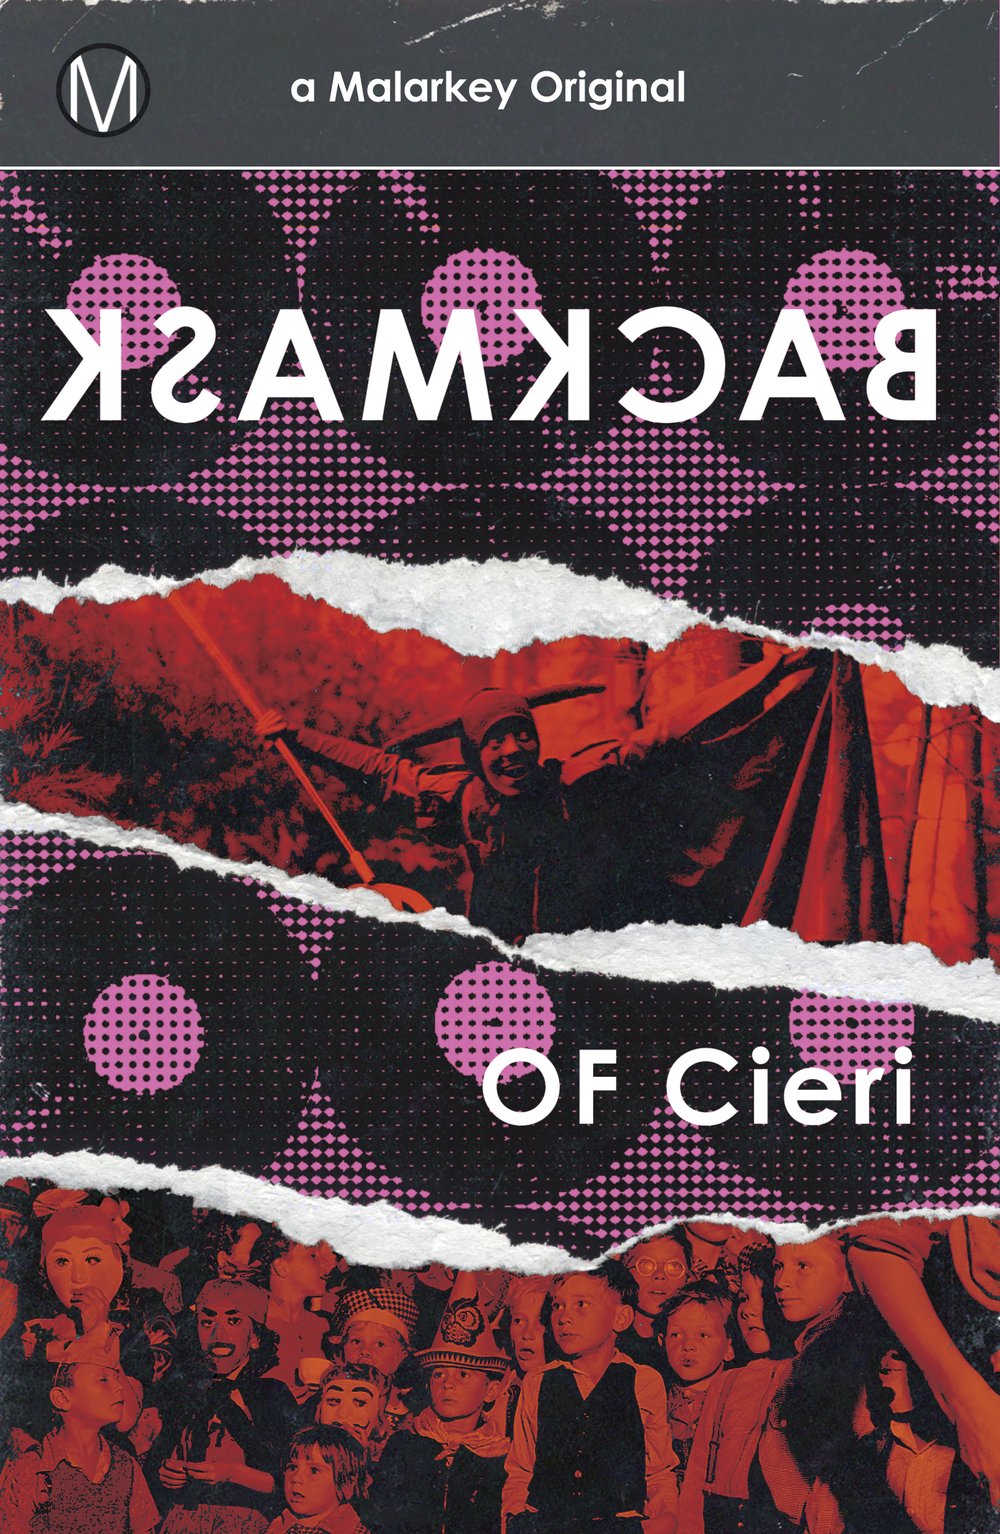 Backmask, a novel by OF Cieri